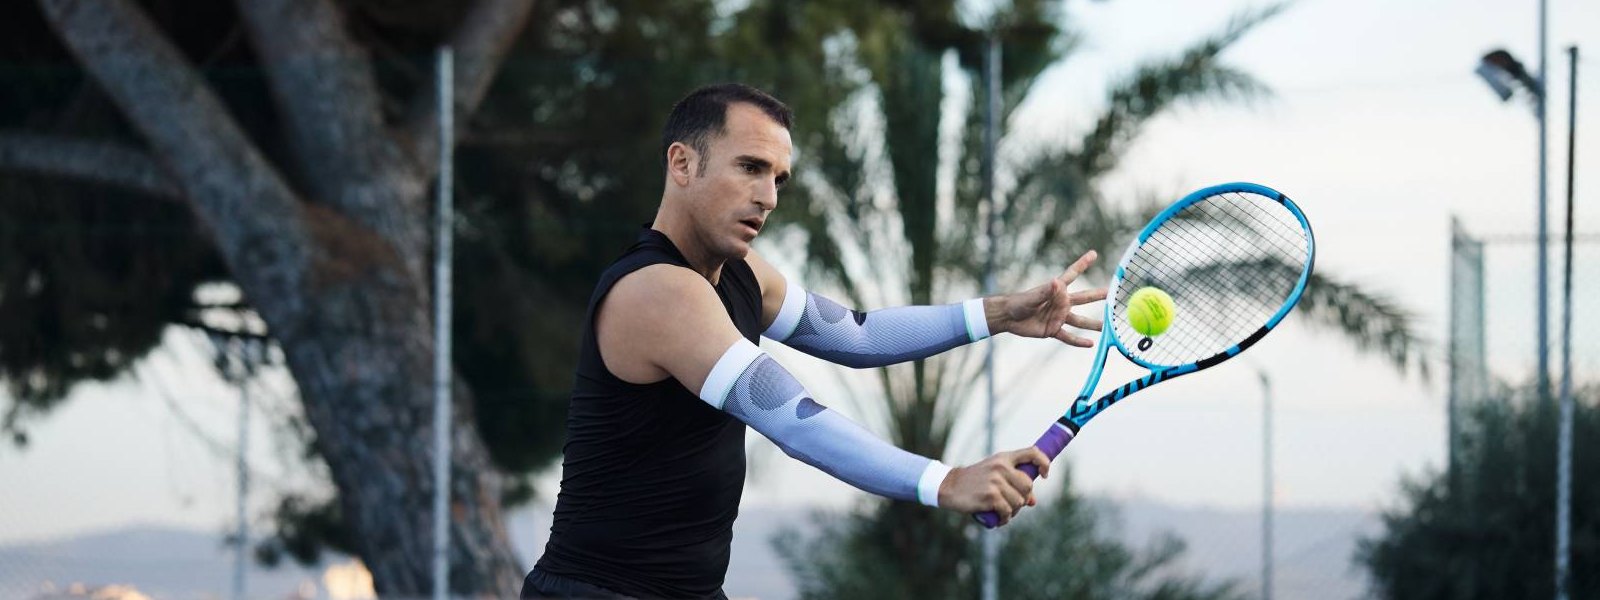 Tennisspieler mit weißen Arm Sleeves spielt Tennis und schlägt einen Ball mit der Rückhand